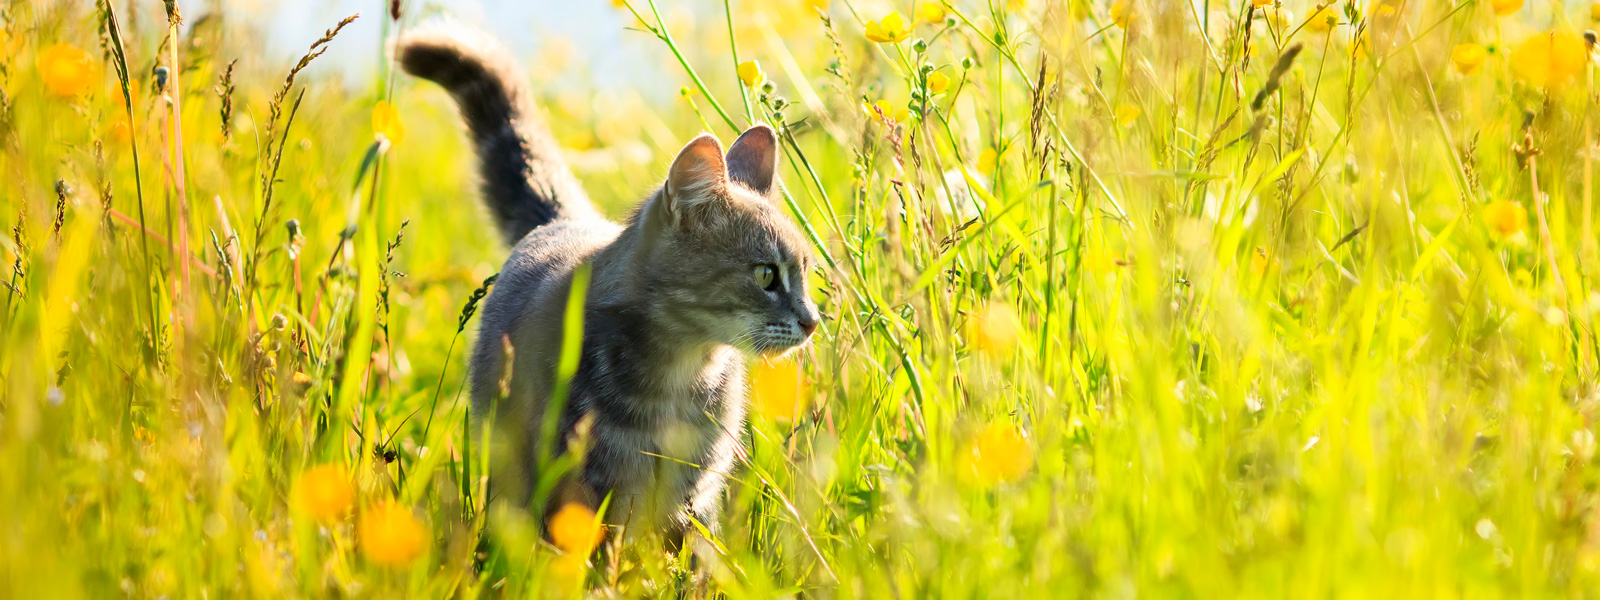 Un chat se tient dans une prairie sous un soleil radieux.